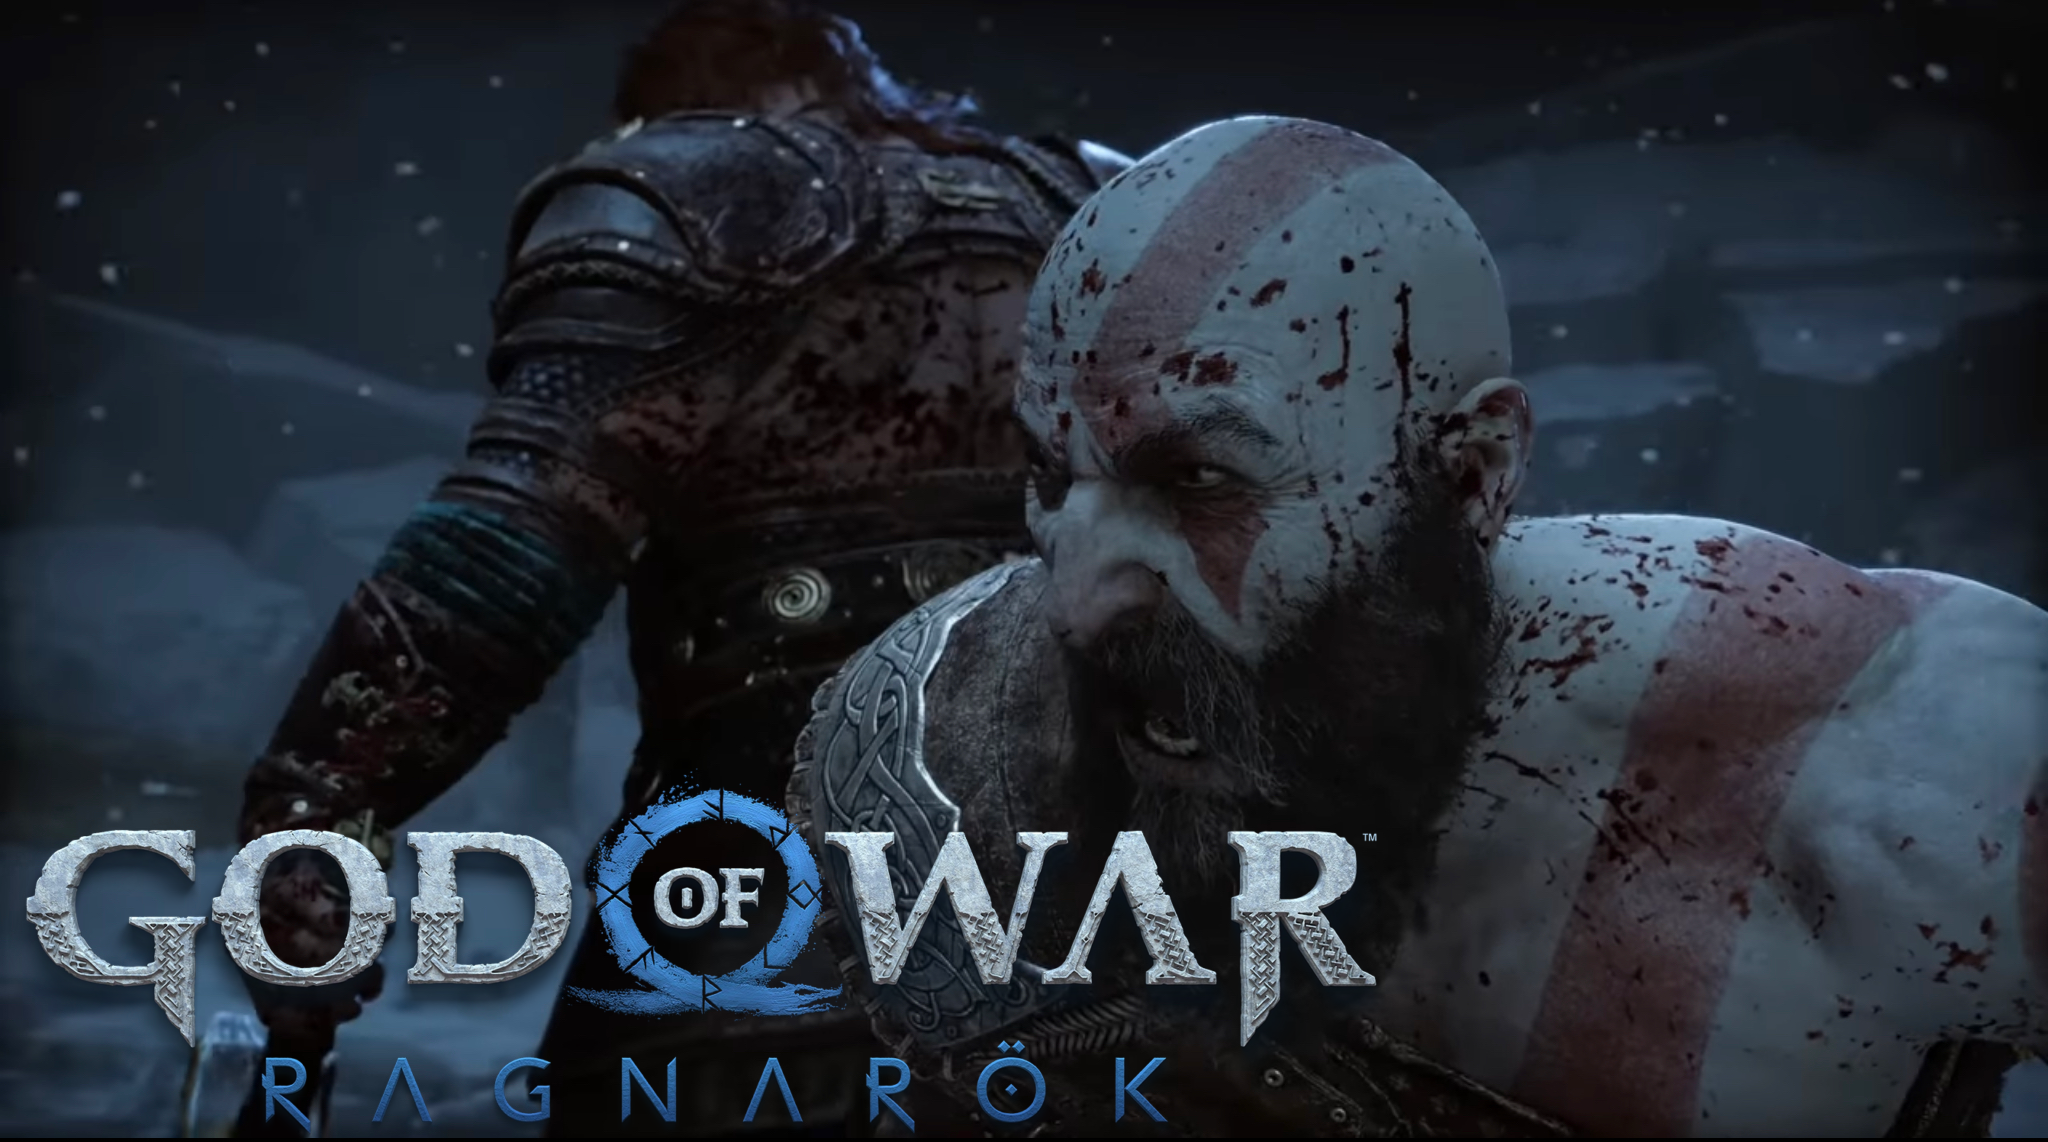 God of War: Ragnarök: How to Beat Thor (Second Fight)